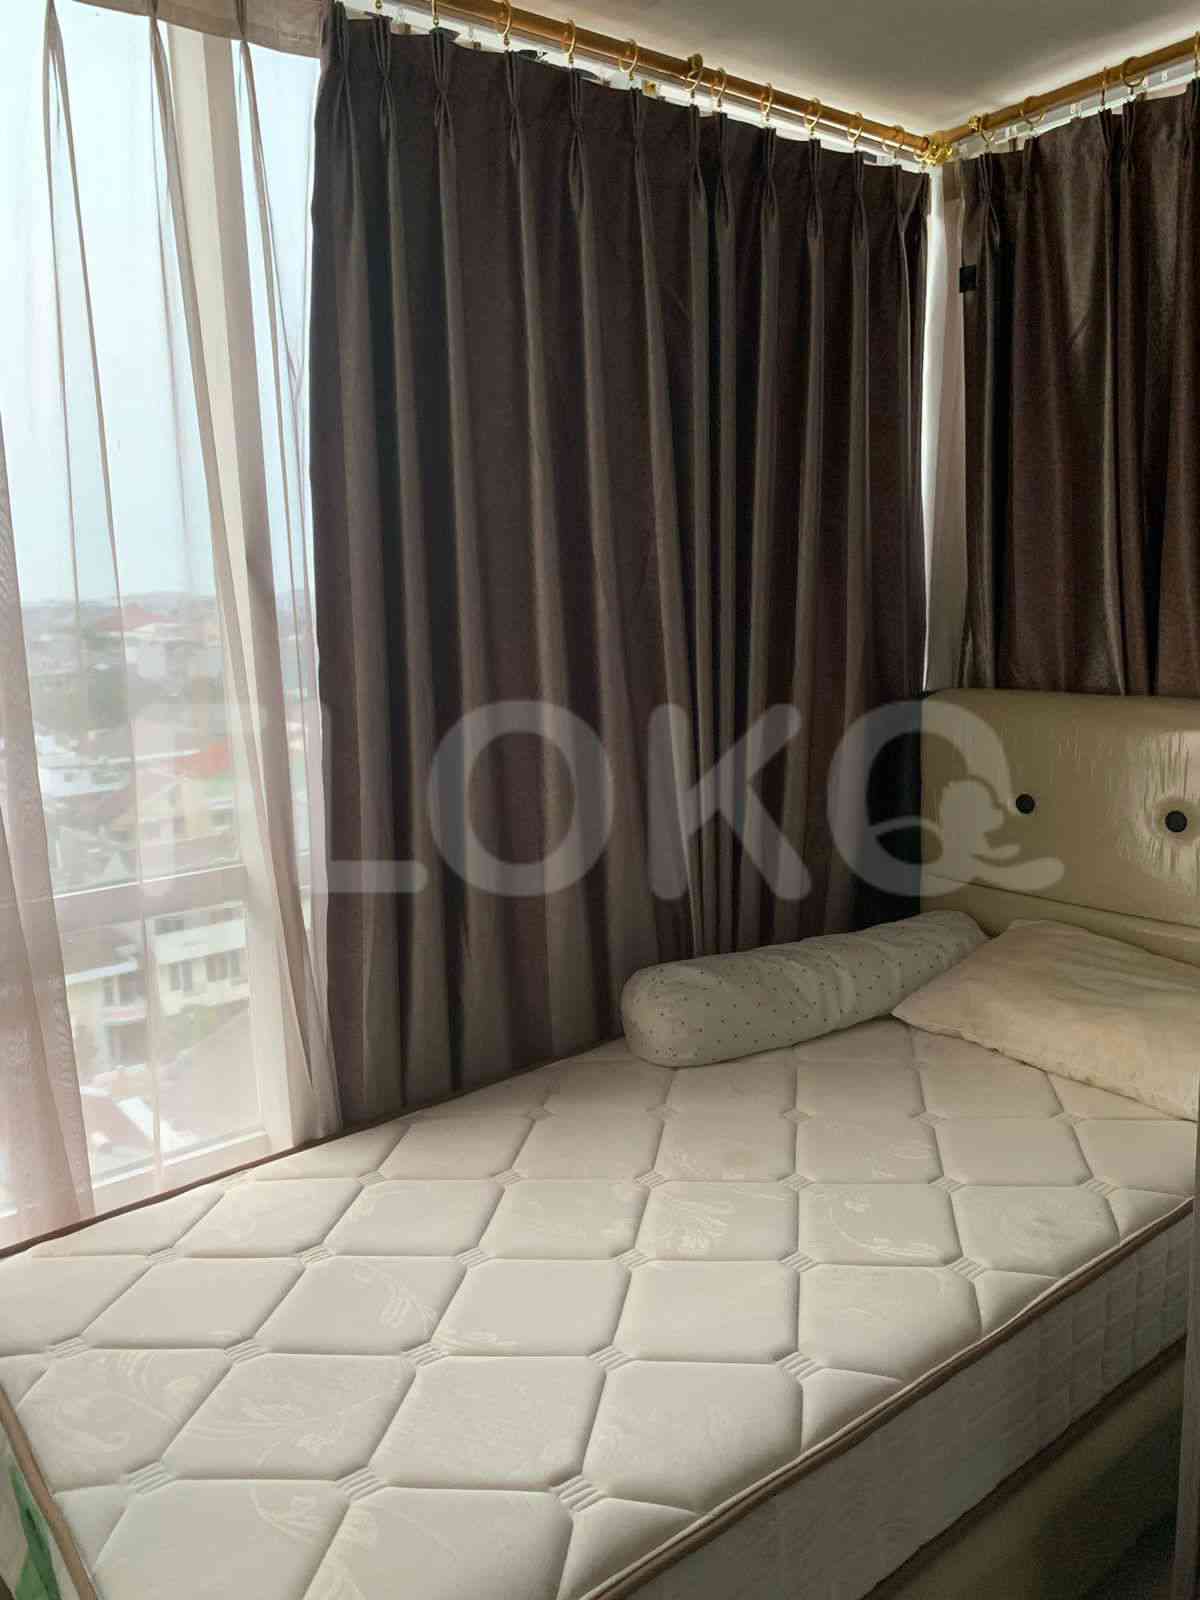 2 Bedroom on 9th Floor for Rent in Aston Pluit de Paradiso - fplf98 3